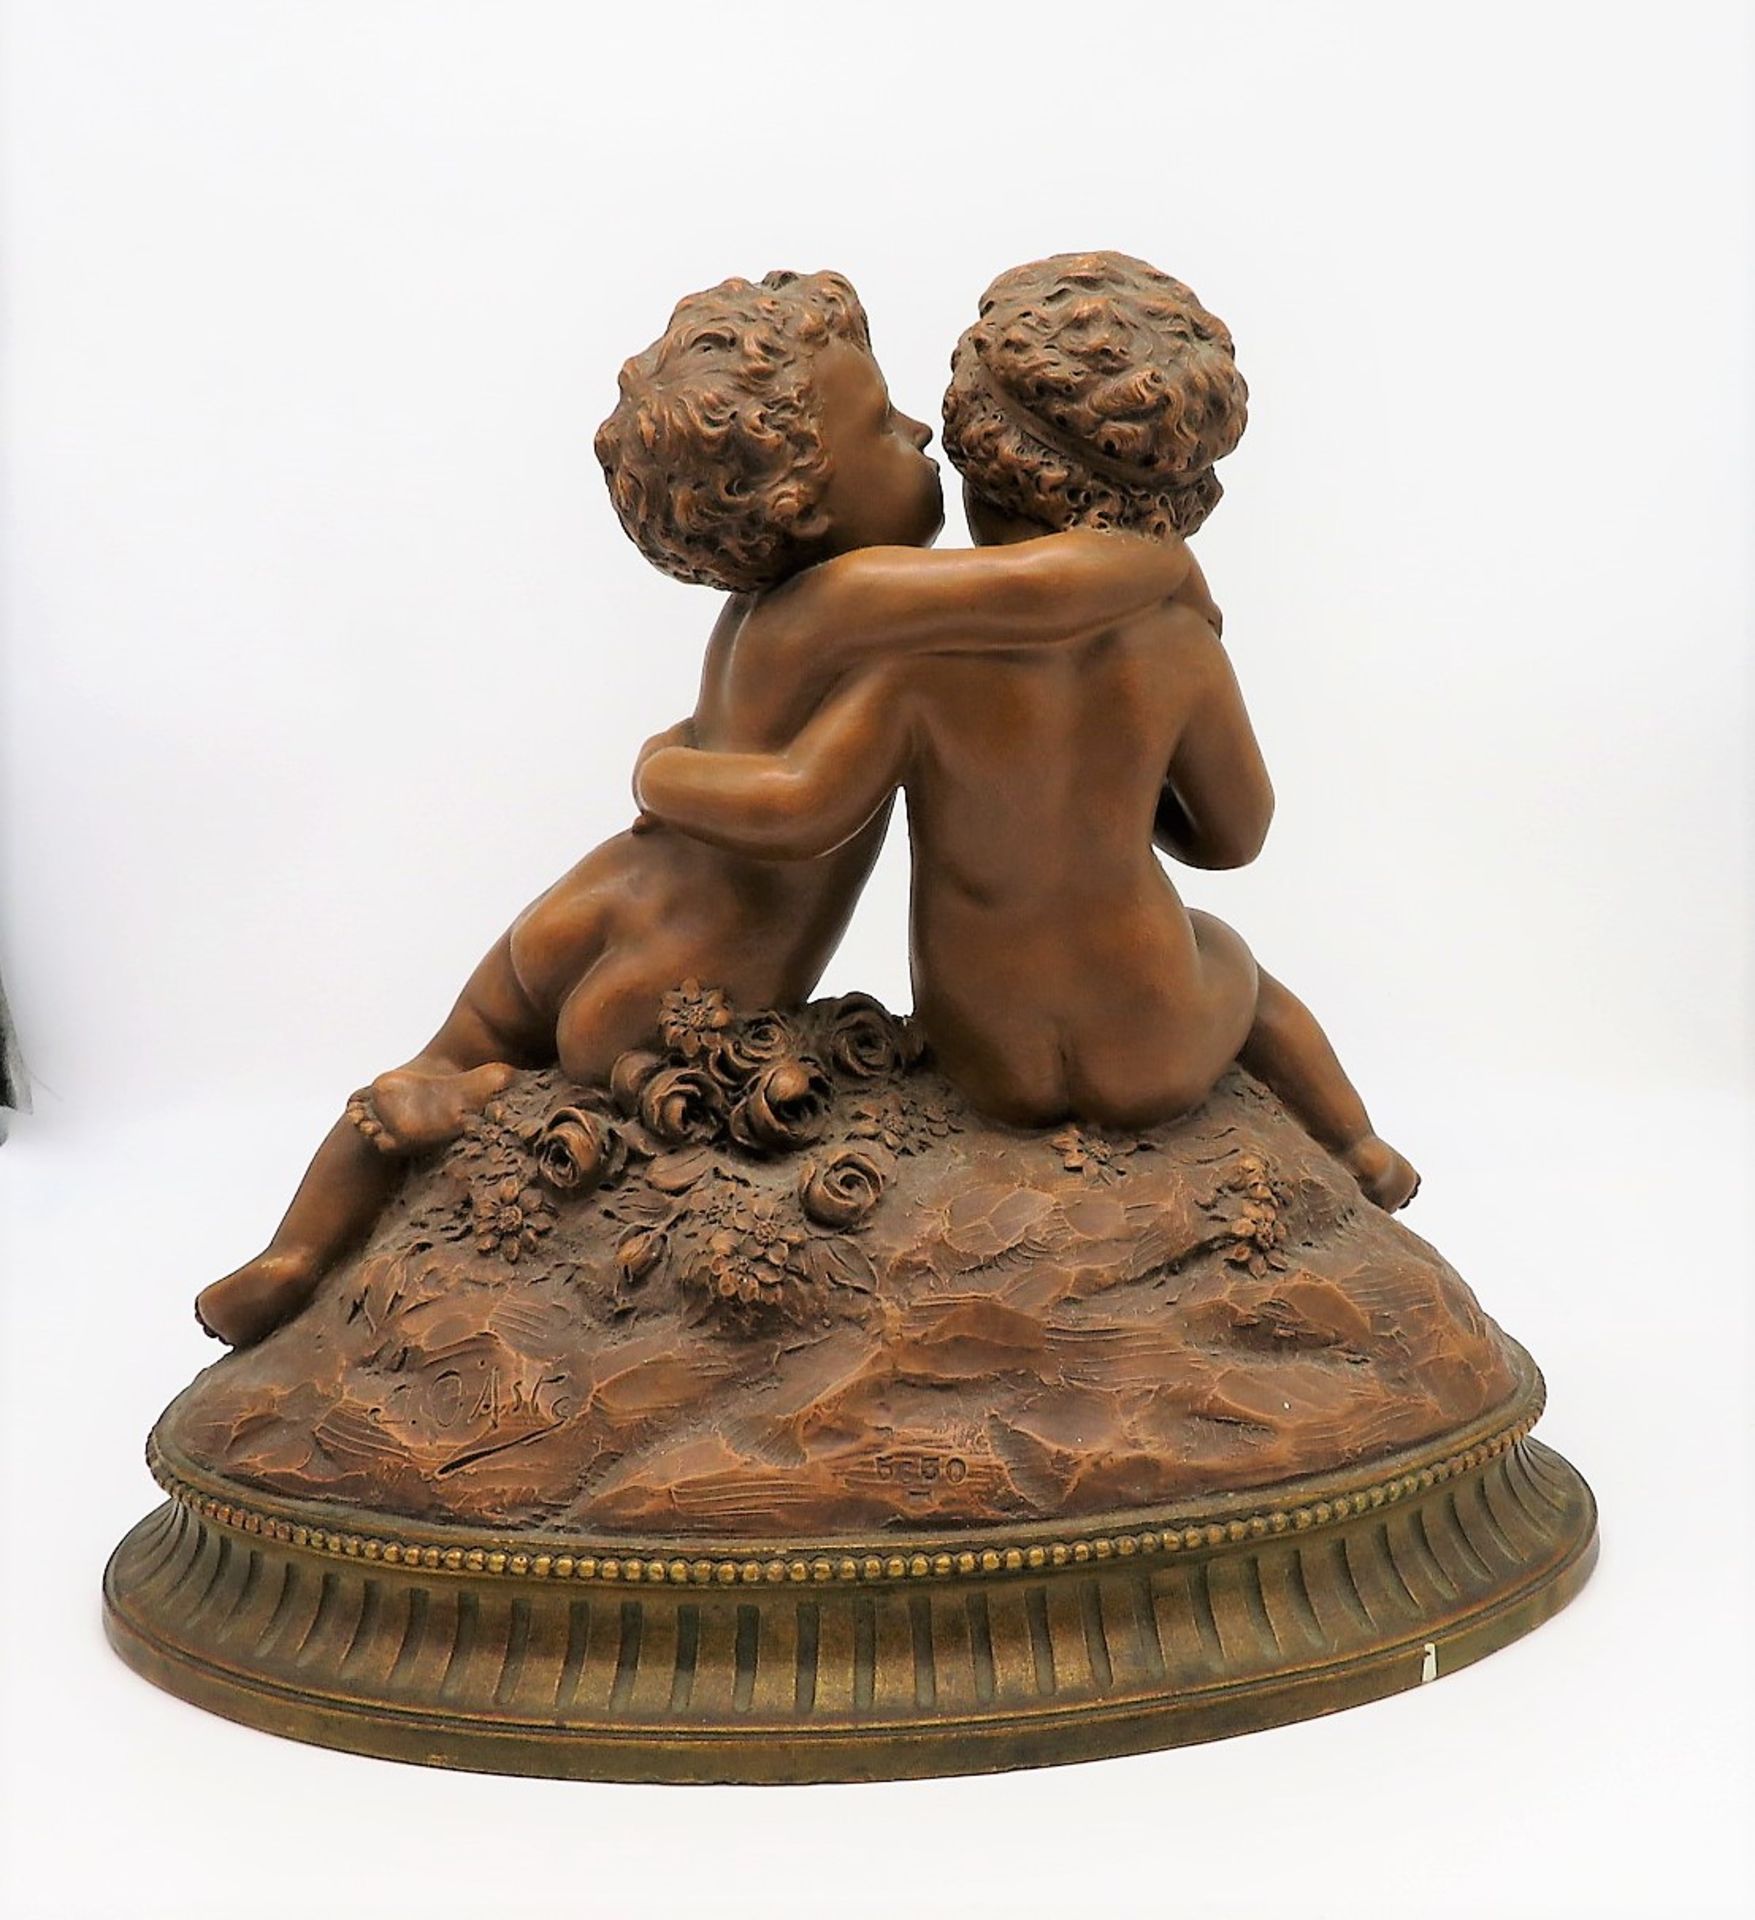 D'Aste, Joseph (Giuseppe), 1881 - 1945, Neapel - Volendam, Italienisch-französischer Bildhauer, tät - Image 2 of 3